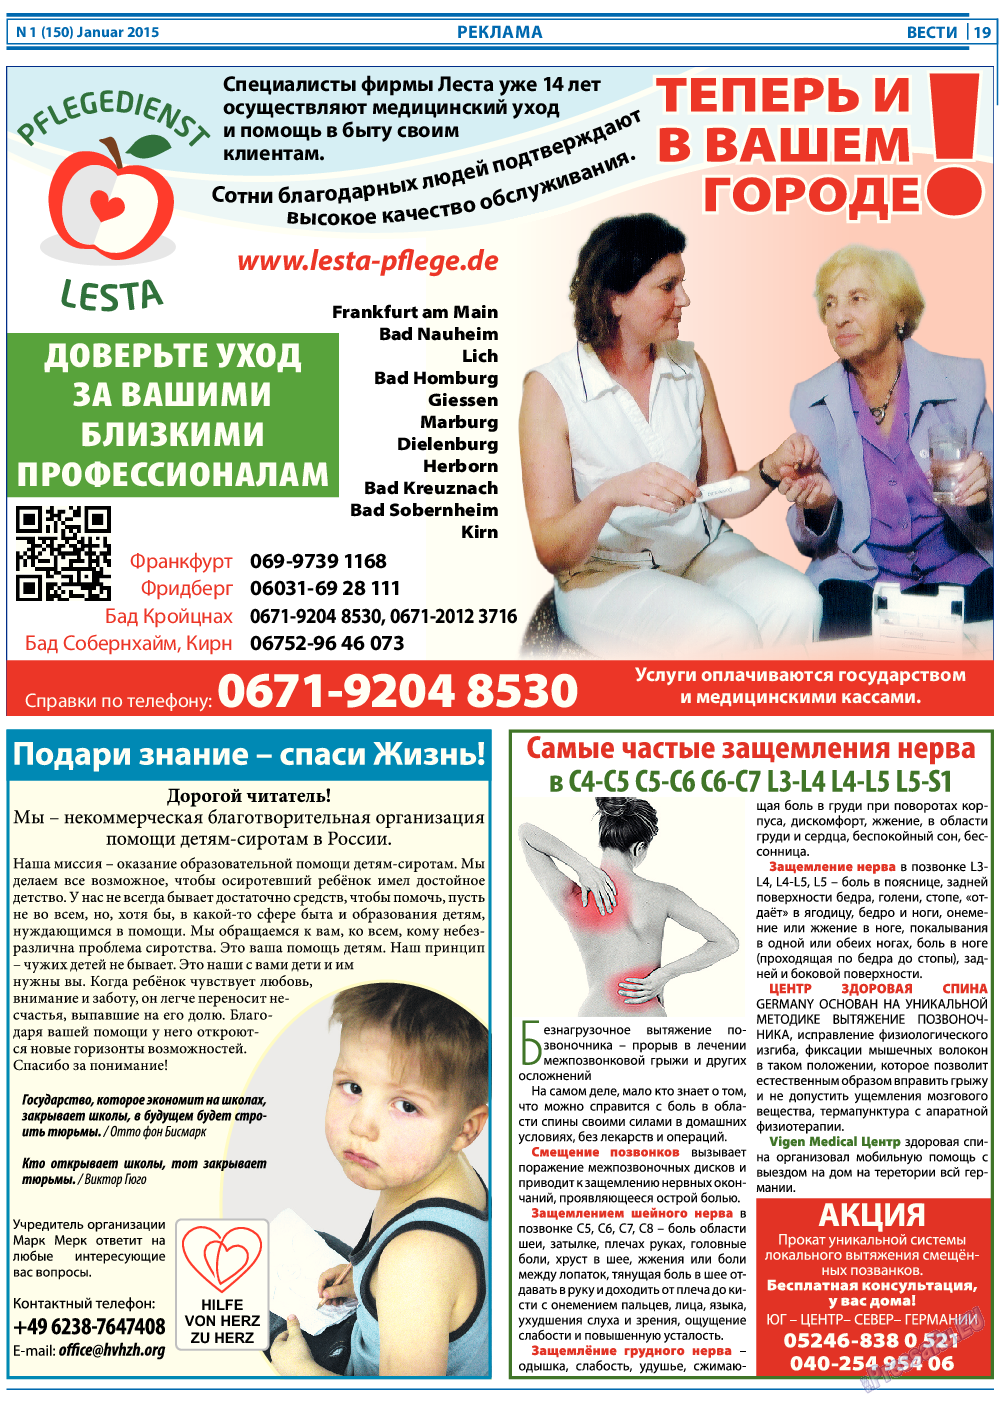 Вести, газета. 2015 №1 стр.19